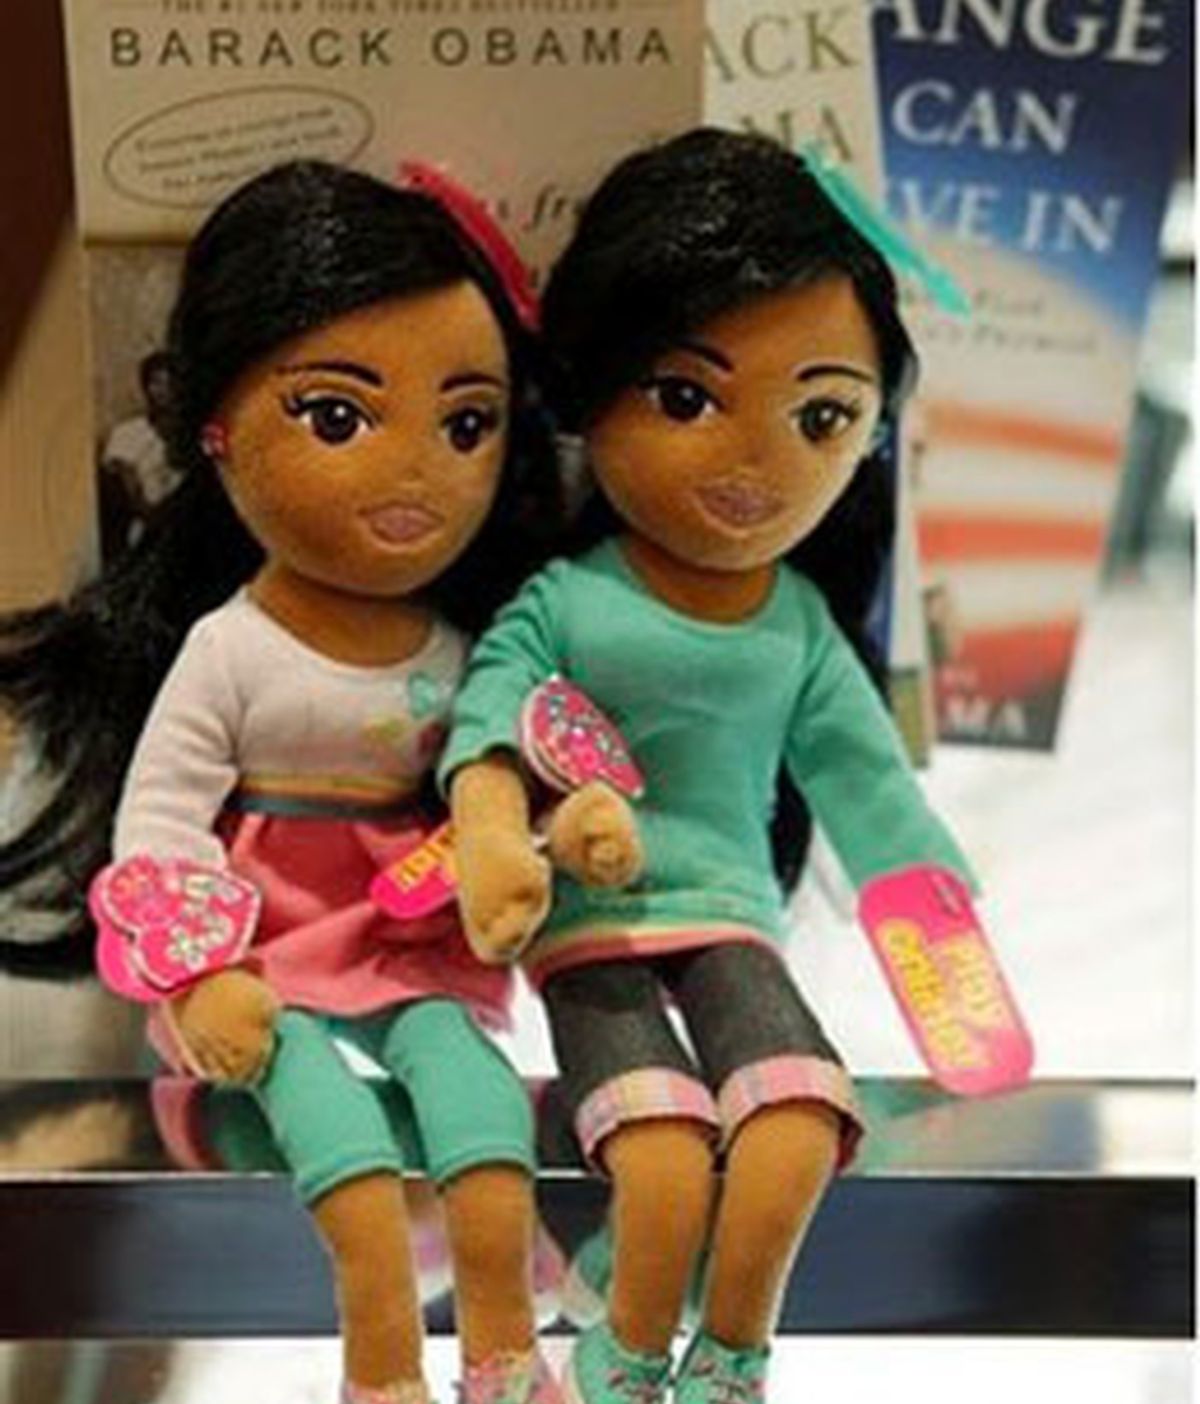 Las muñecas que no han gustado a Michelle Obama. Sasha y Malia, de la colección de TyGirlz que fueron presentadas poco antes de la toma de posesión de Barack Obama.